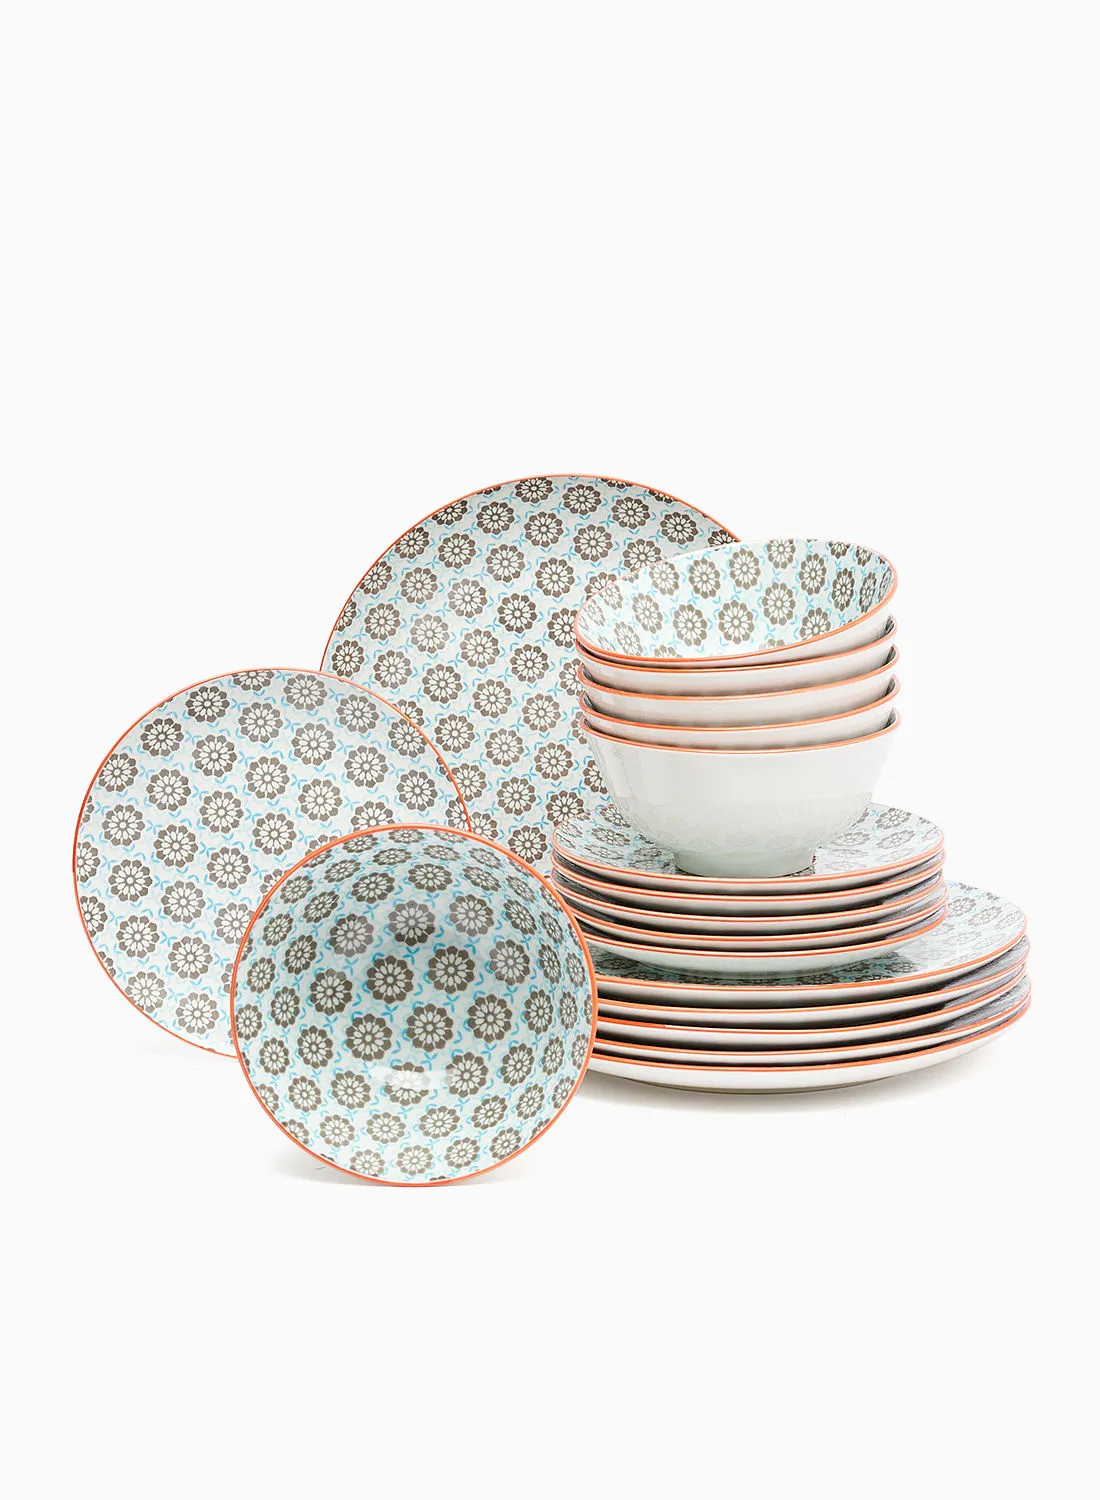 noon east 18 Piece Porcelain Dinner Set - Dishes, Plates - Dinner Plate, Side Plate, Bowl - Serves 6 - Printed Design Charlotte